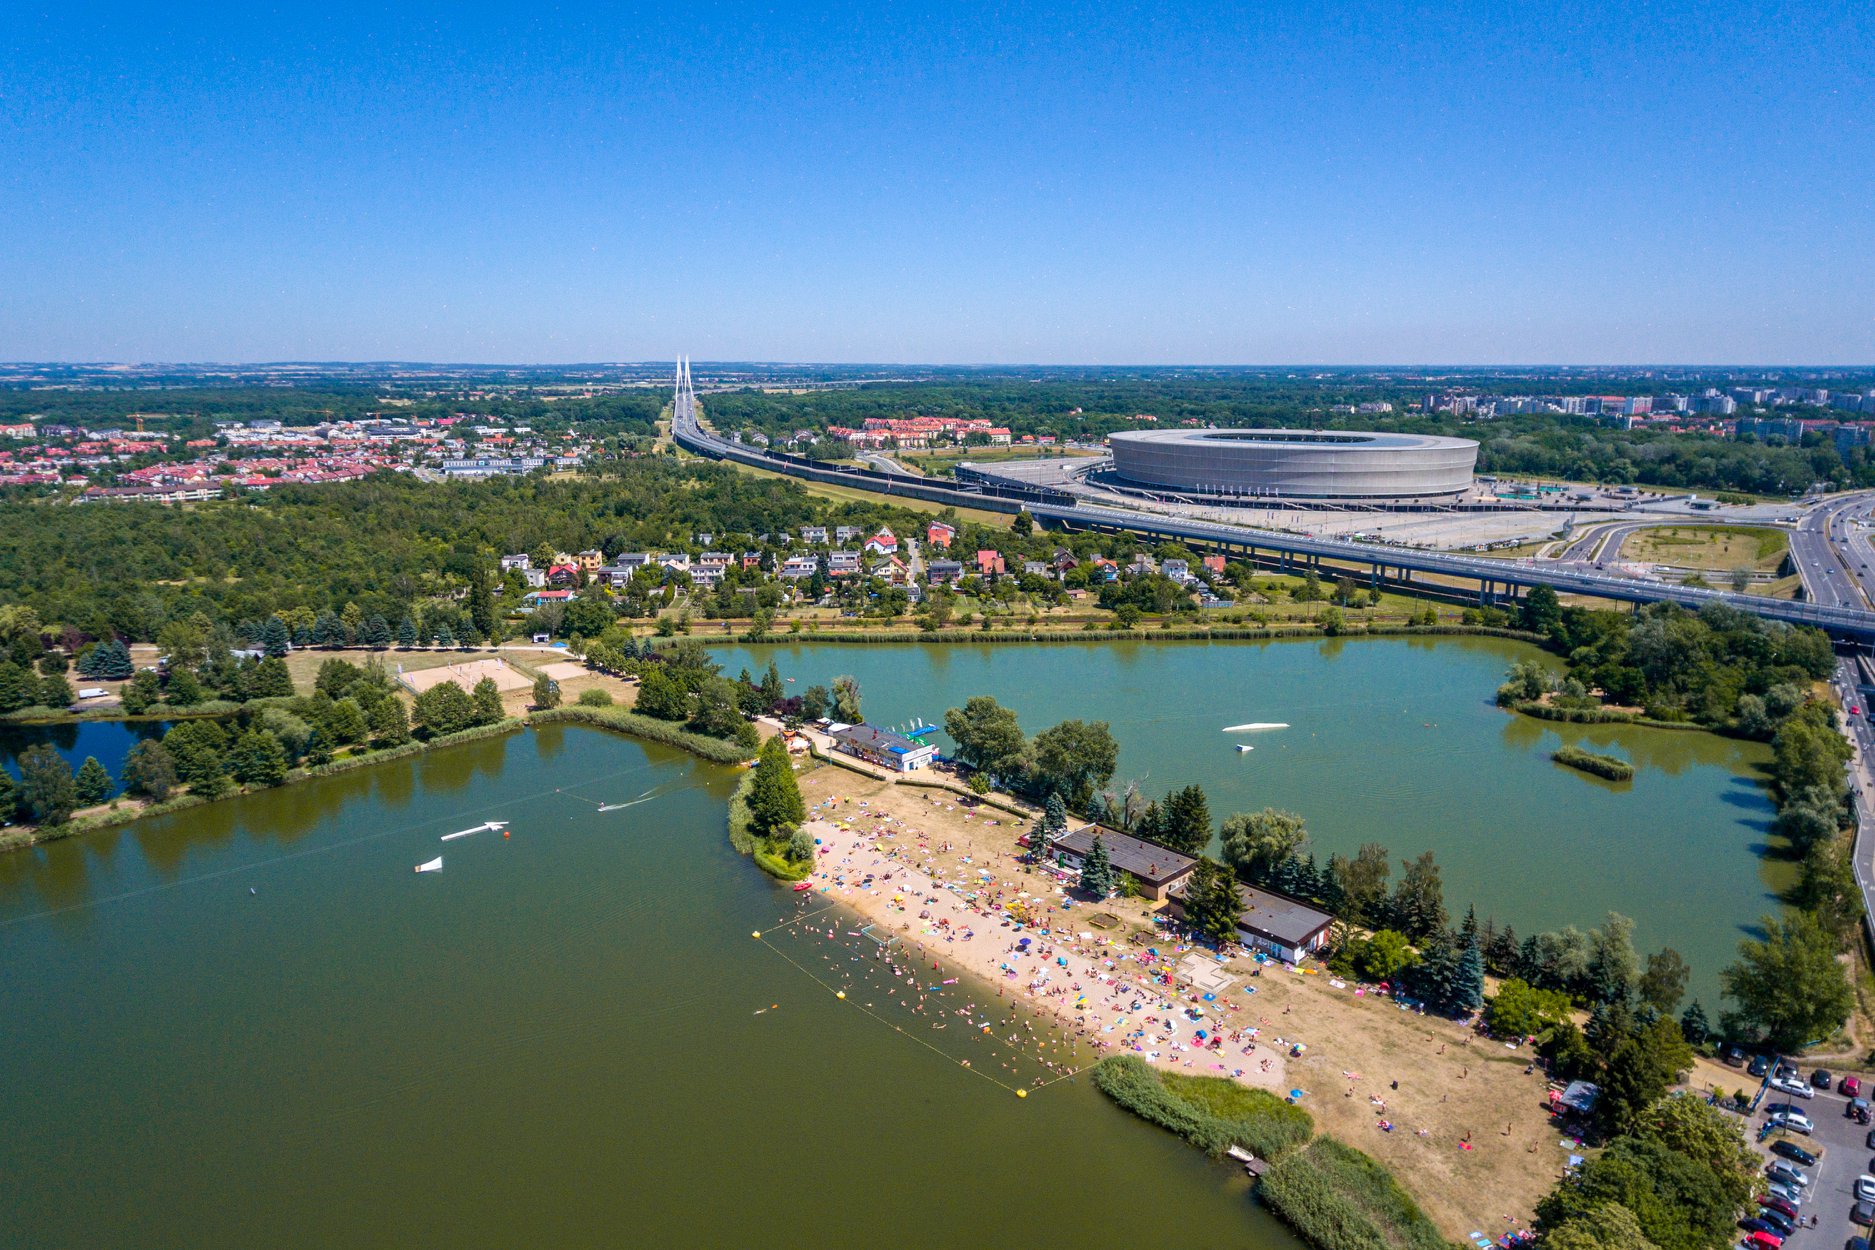 Otwarte kąpieliska we Wrocławiu przez całe lato przyciągały tłumy odwiedzających. Ile osób skorzystało z tych atrakcji?